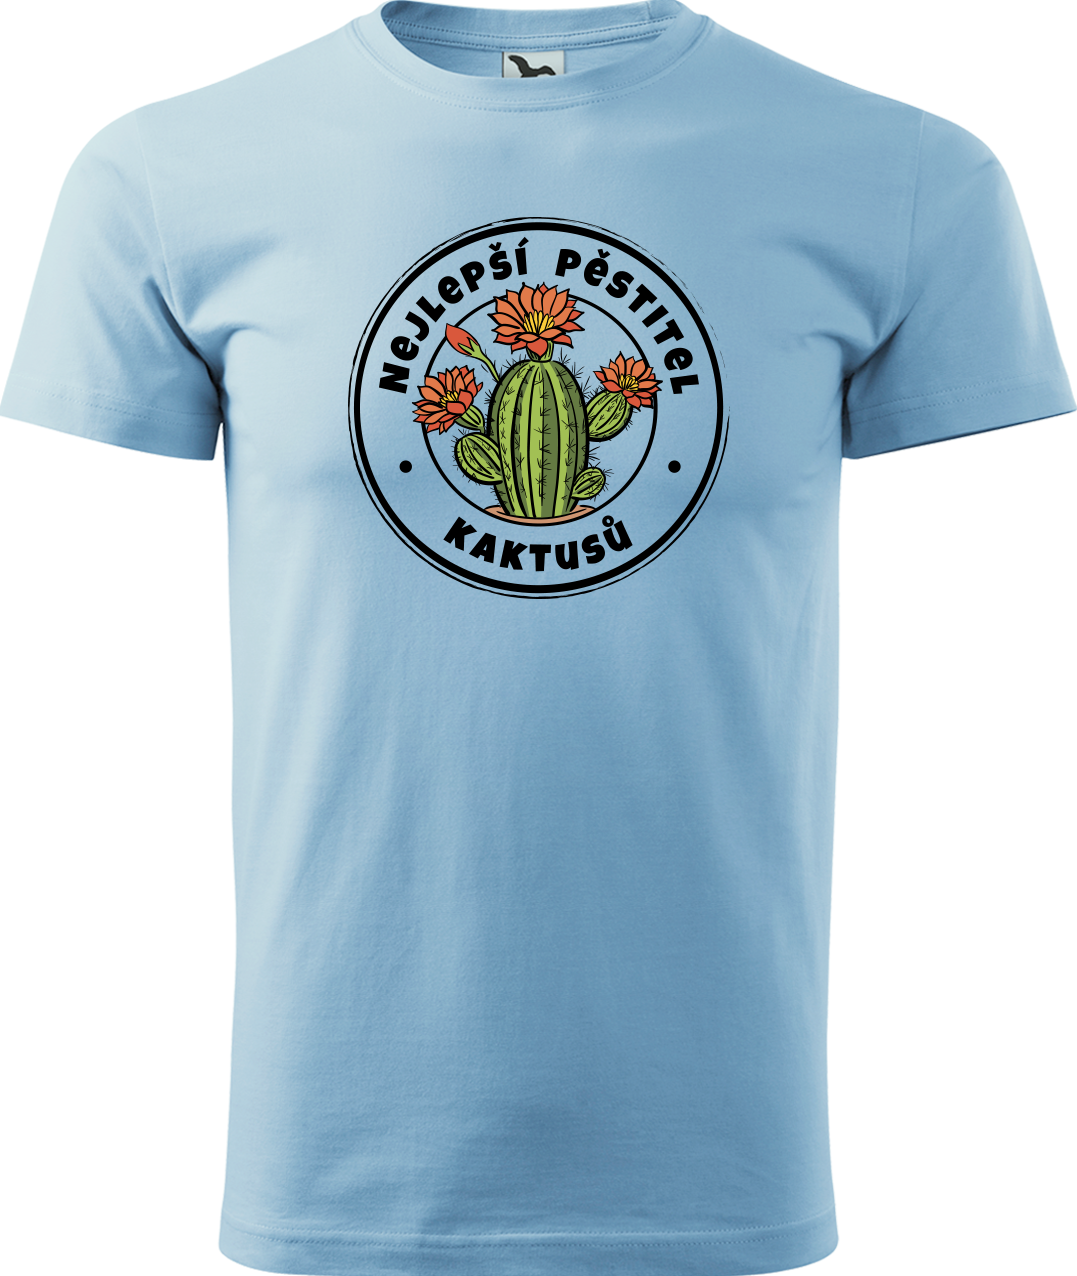 Tričko s kaktusem - Nejlepší pěstitel kaktusů Velikost: M, Barva: Nebesky modrá (15)